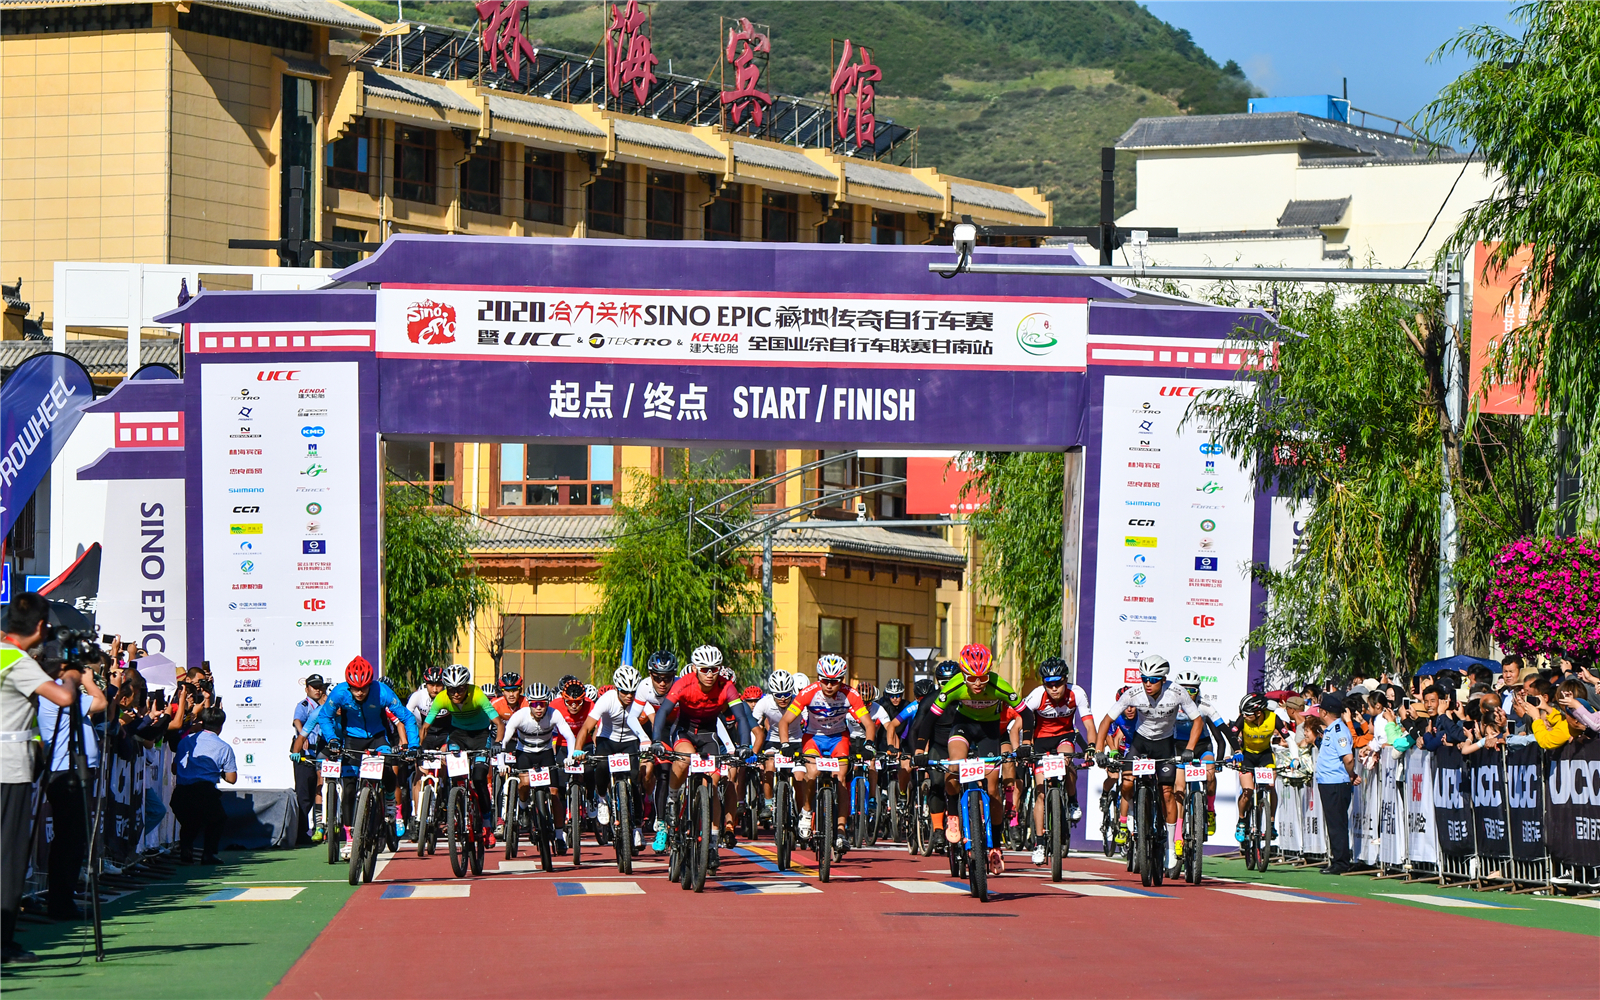 独具文化风情、蜚声国内外的甘南藏地传奇自行车赛现场